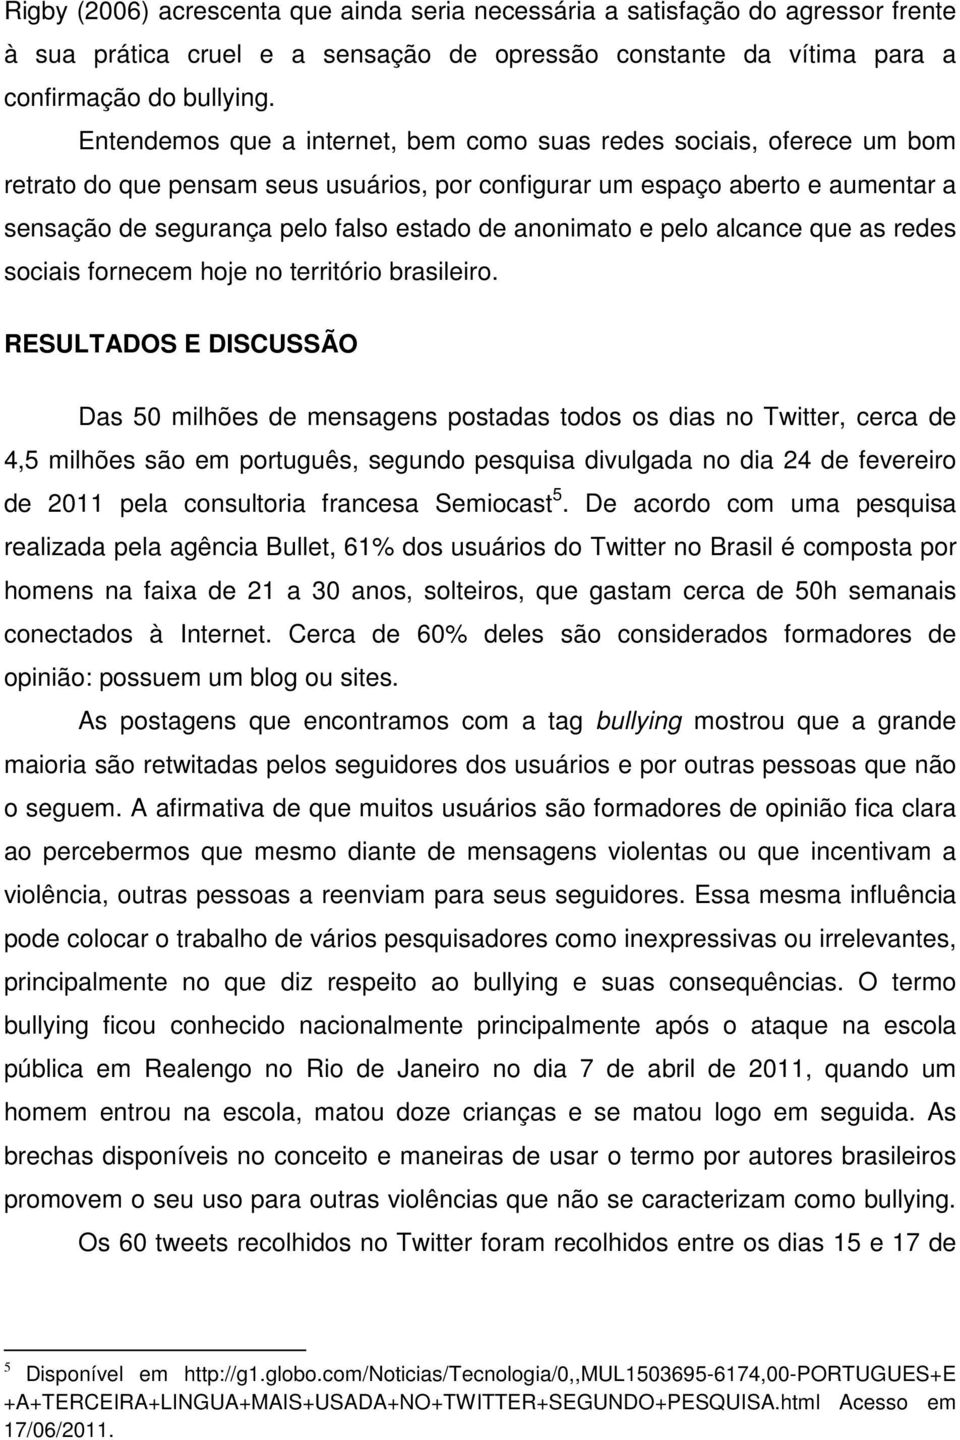 anonimato e pelo alcance que as redes sociais fornecem hoje no território brasileiro.